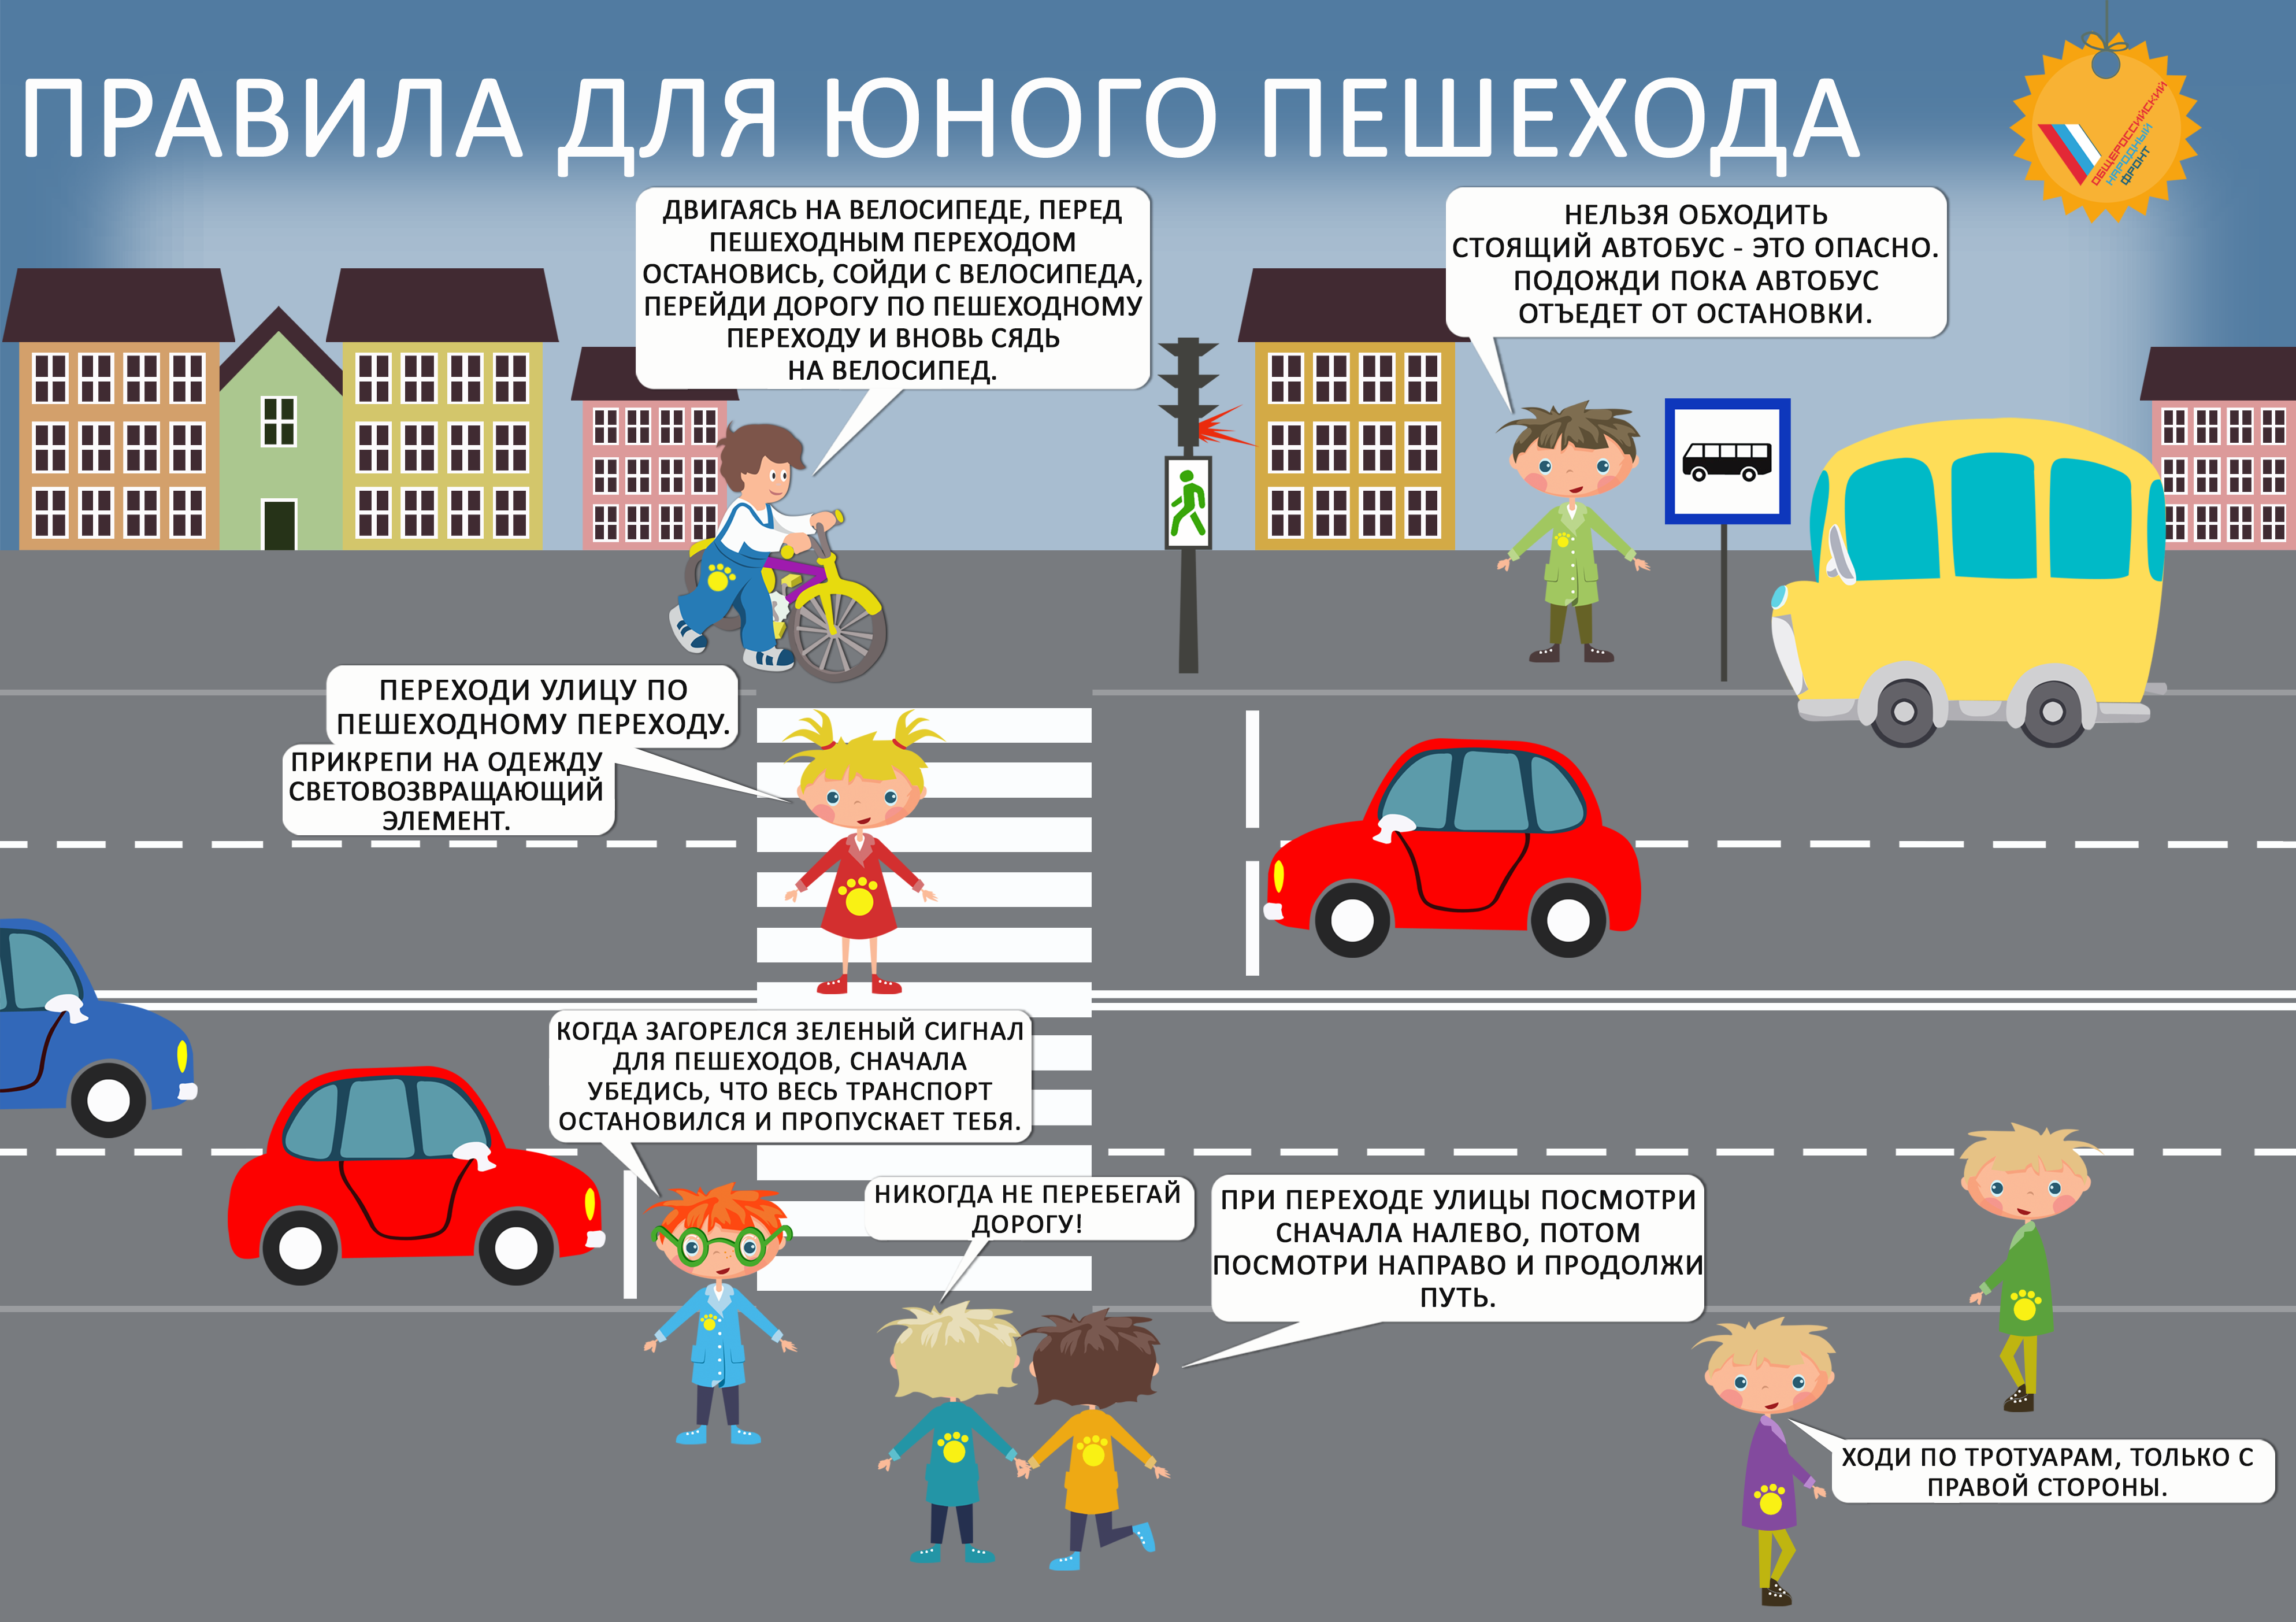 Правила дорожного движения для детей. Правила дорожного движения для пешезодо. Правила дорожного движения для пешеходов для детей. Правила юного пешехода. Правила дорожного